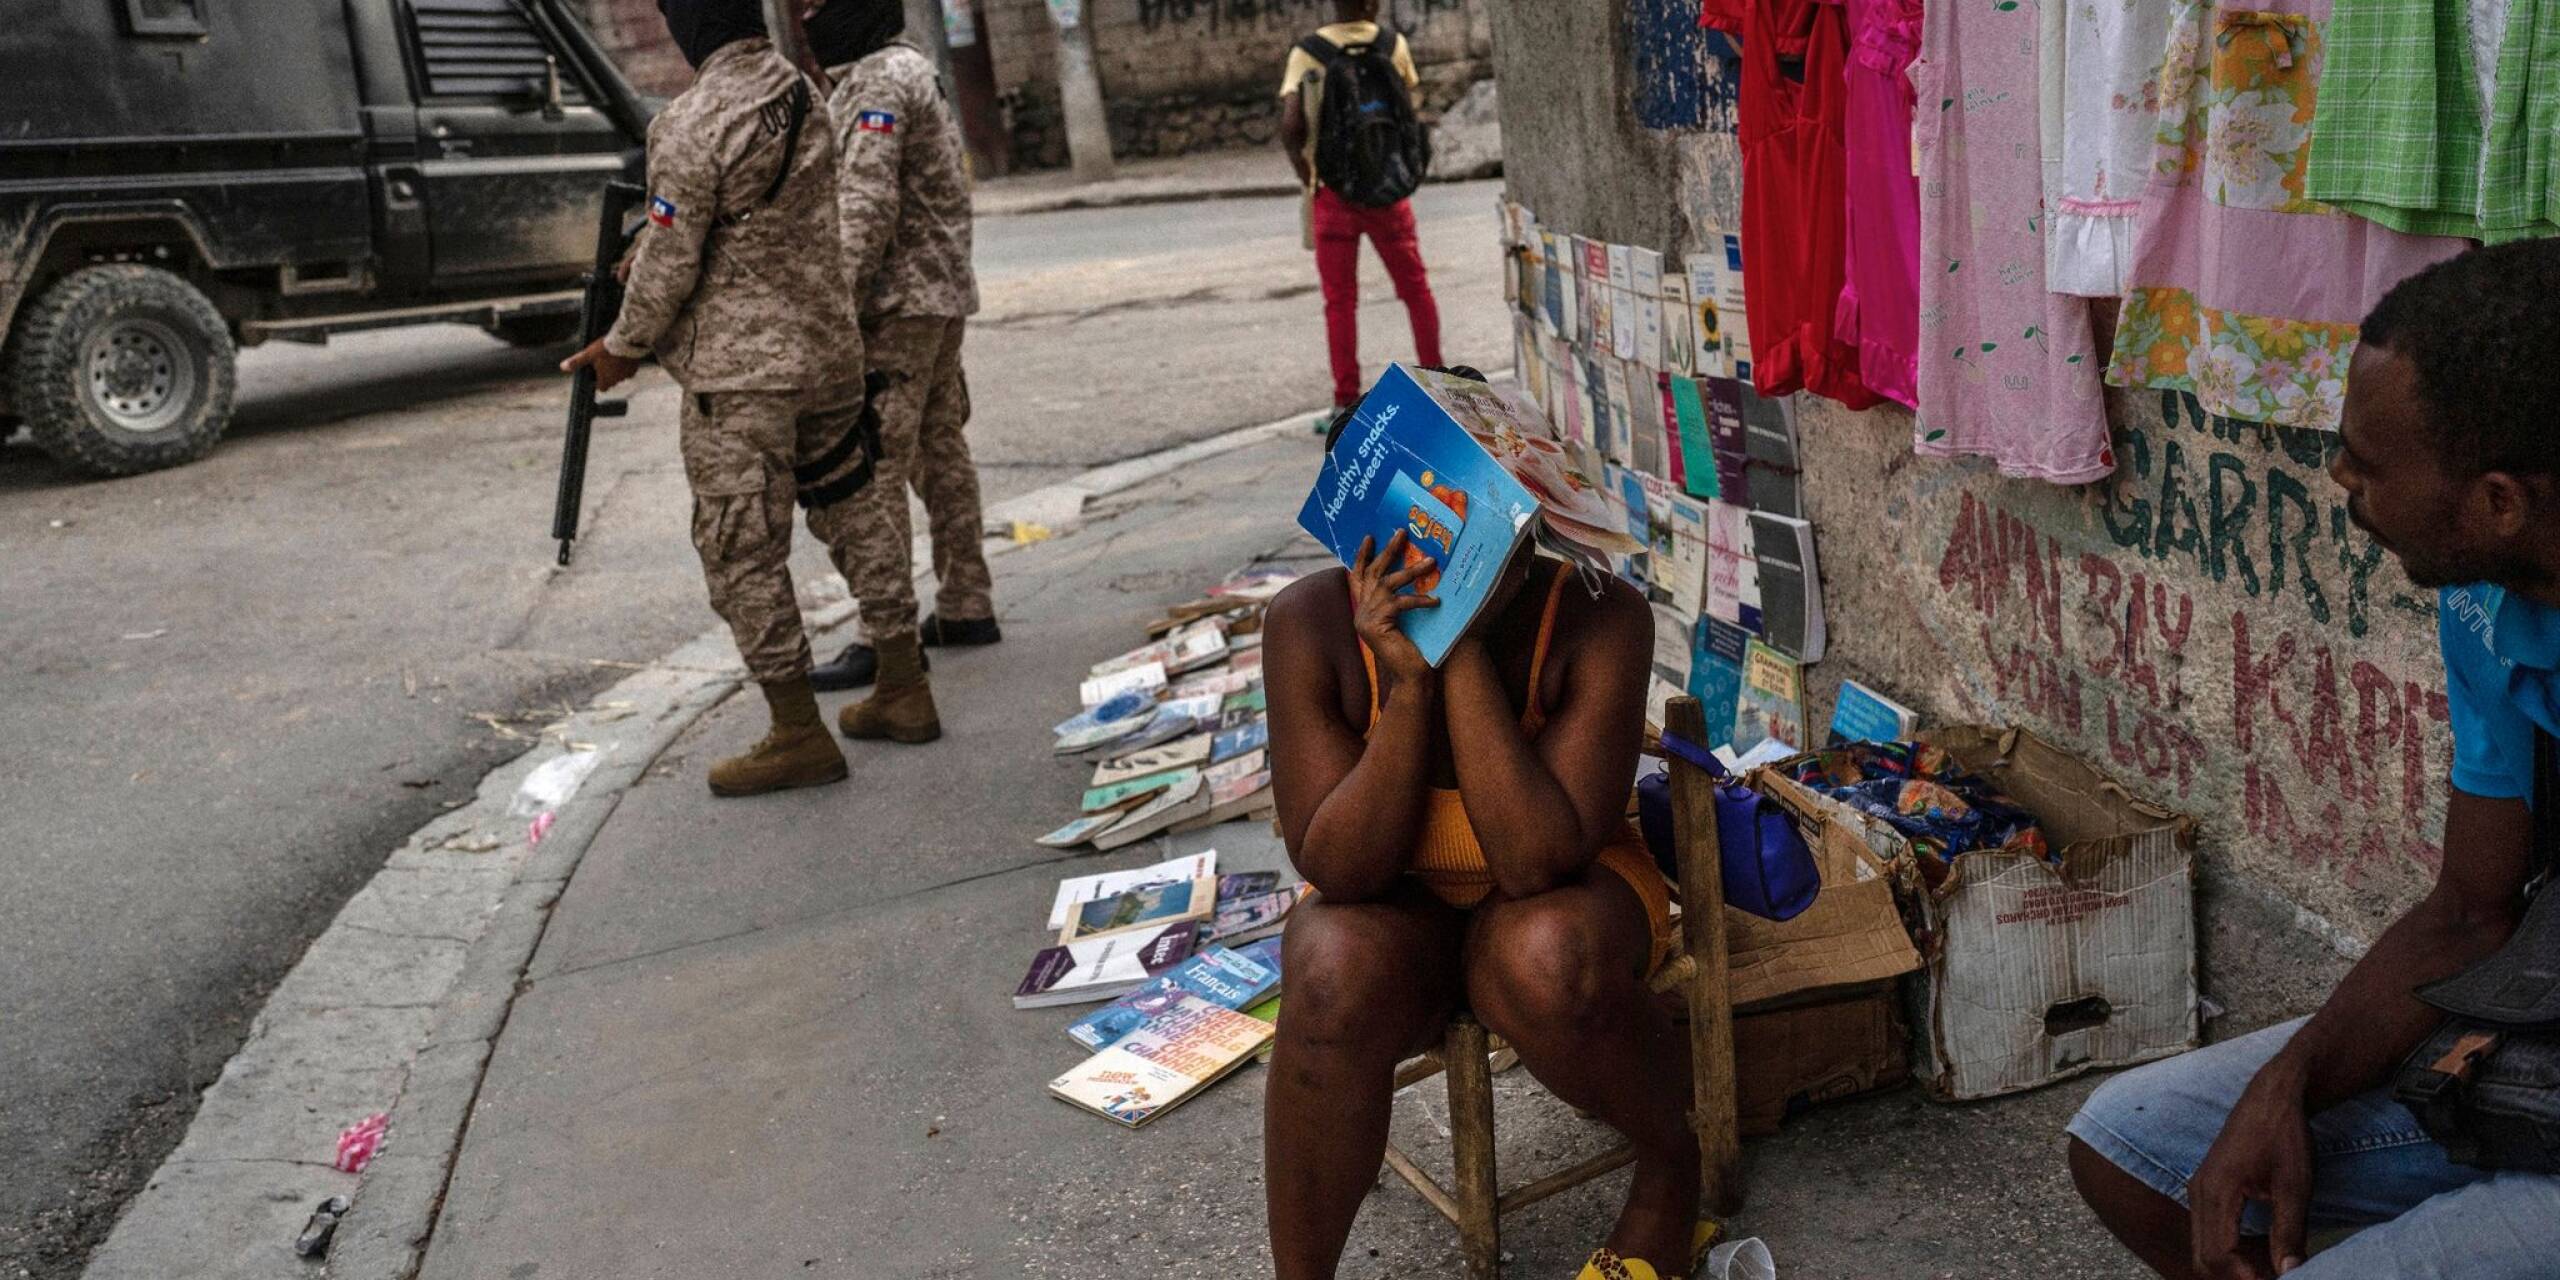 Polizisten patrouillieren neben einer Straßenhändlerin in der Innenstadt von Port-au-Prince. Bewaffnete Gruppen kontrollieren große Teile von Haitis Hauptstadt. Zuletzt eskalierte die Gewalt weiter. Mehr als 1500 Menschen wurden in den ersten drei Monaten des Jahres getötet.